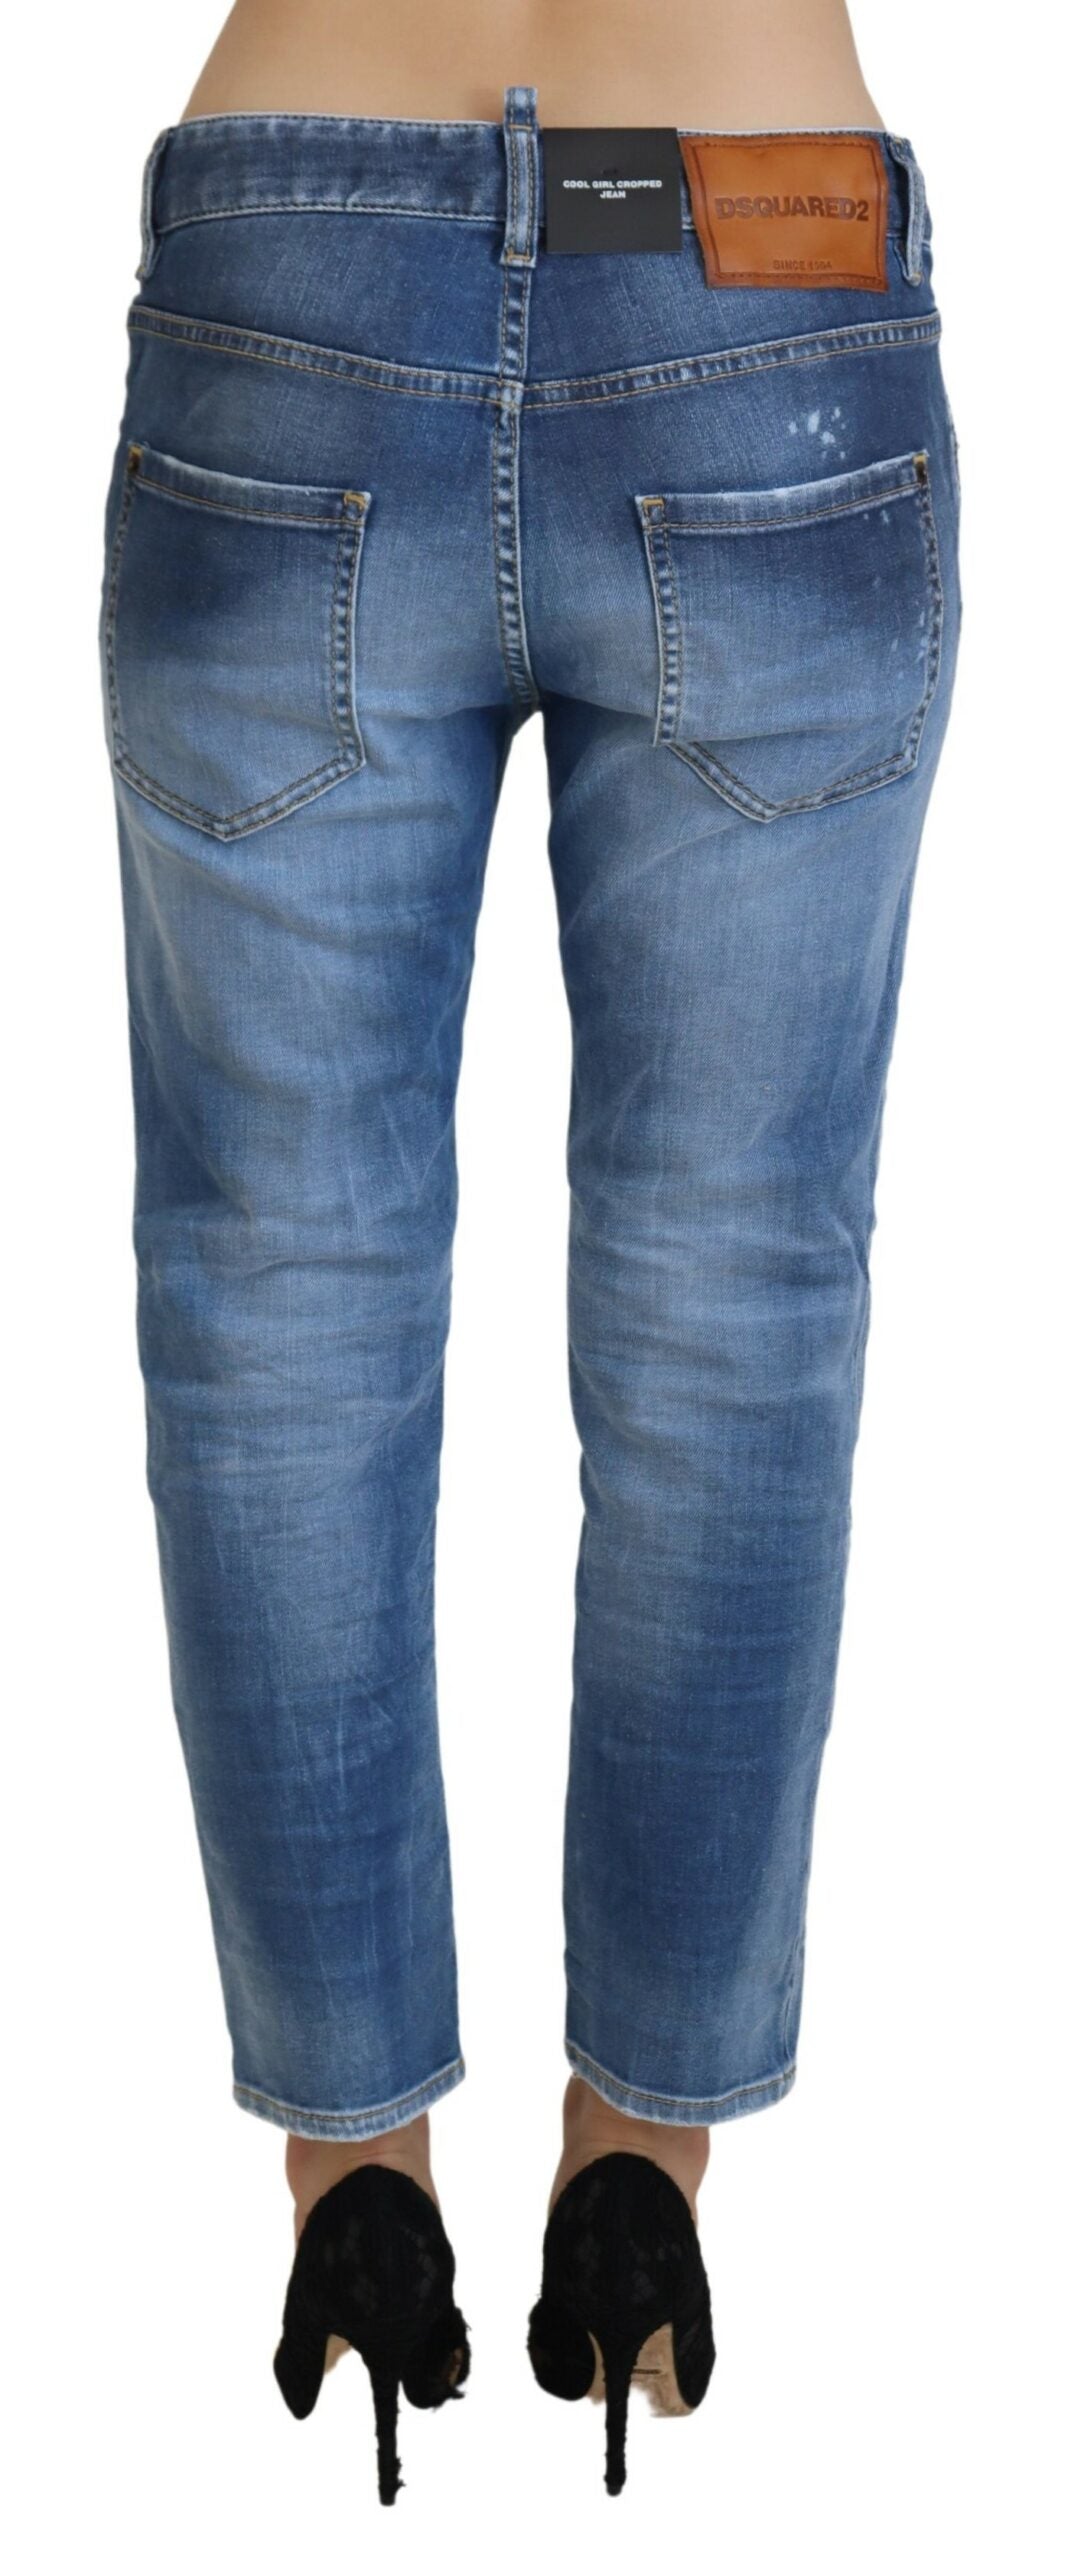 DSquared² Coton bleu taille basse jeans de la fille fraîche et fraîche